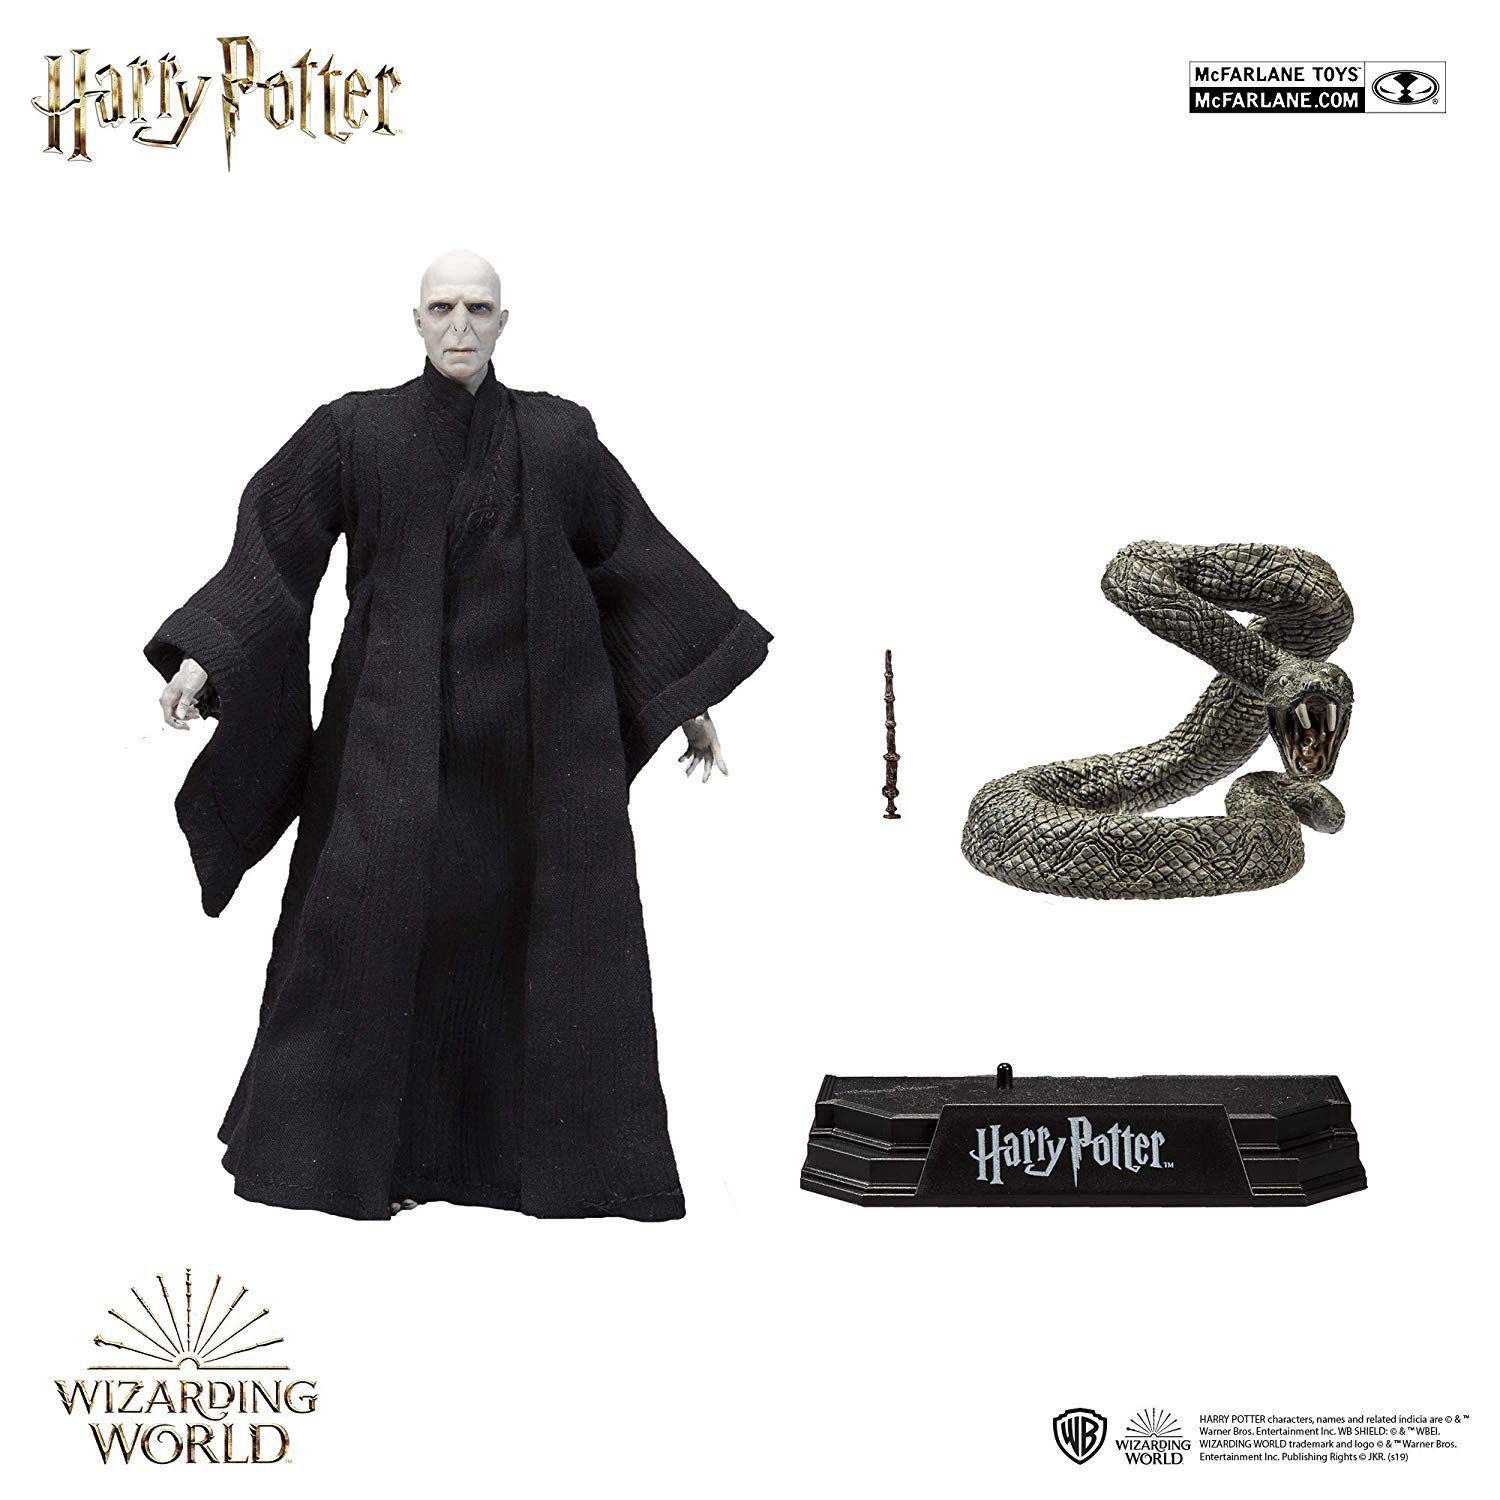 McFarlane Toys Harry Potter - Lord Voldemort Action Figure Oficial Licenciado